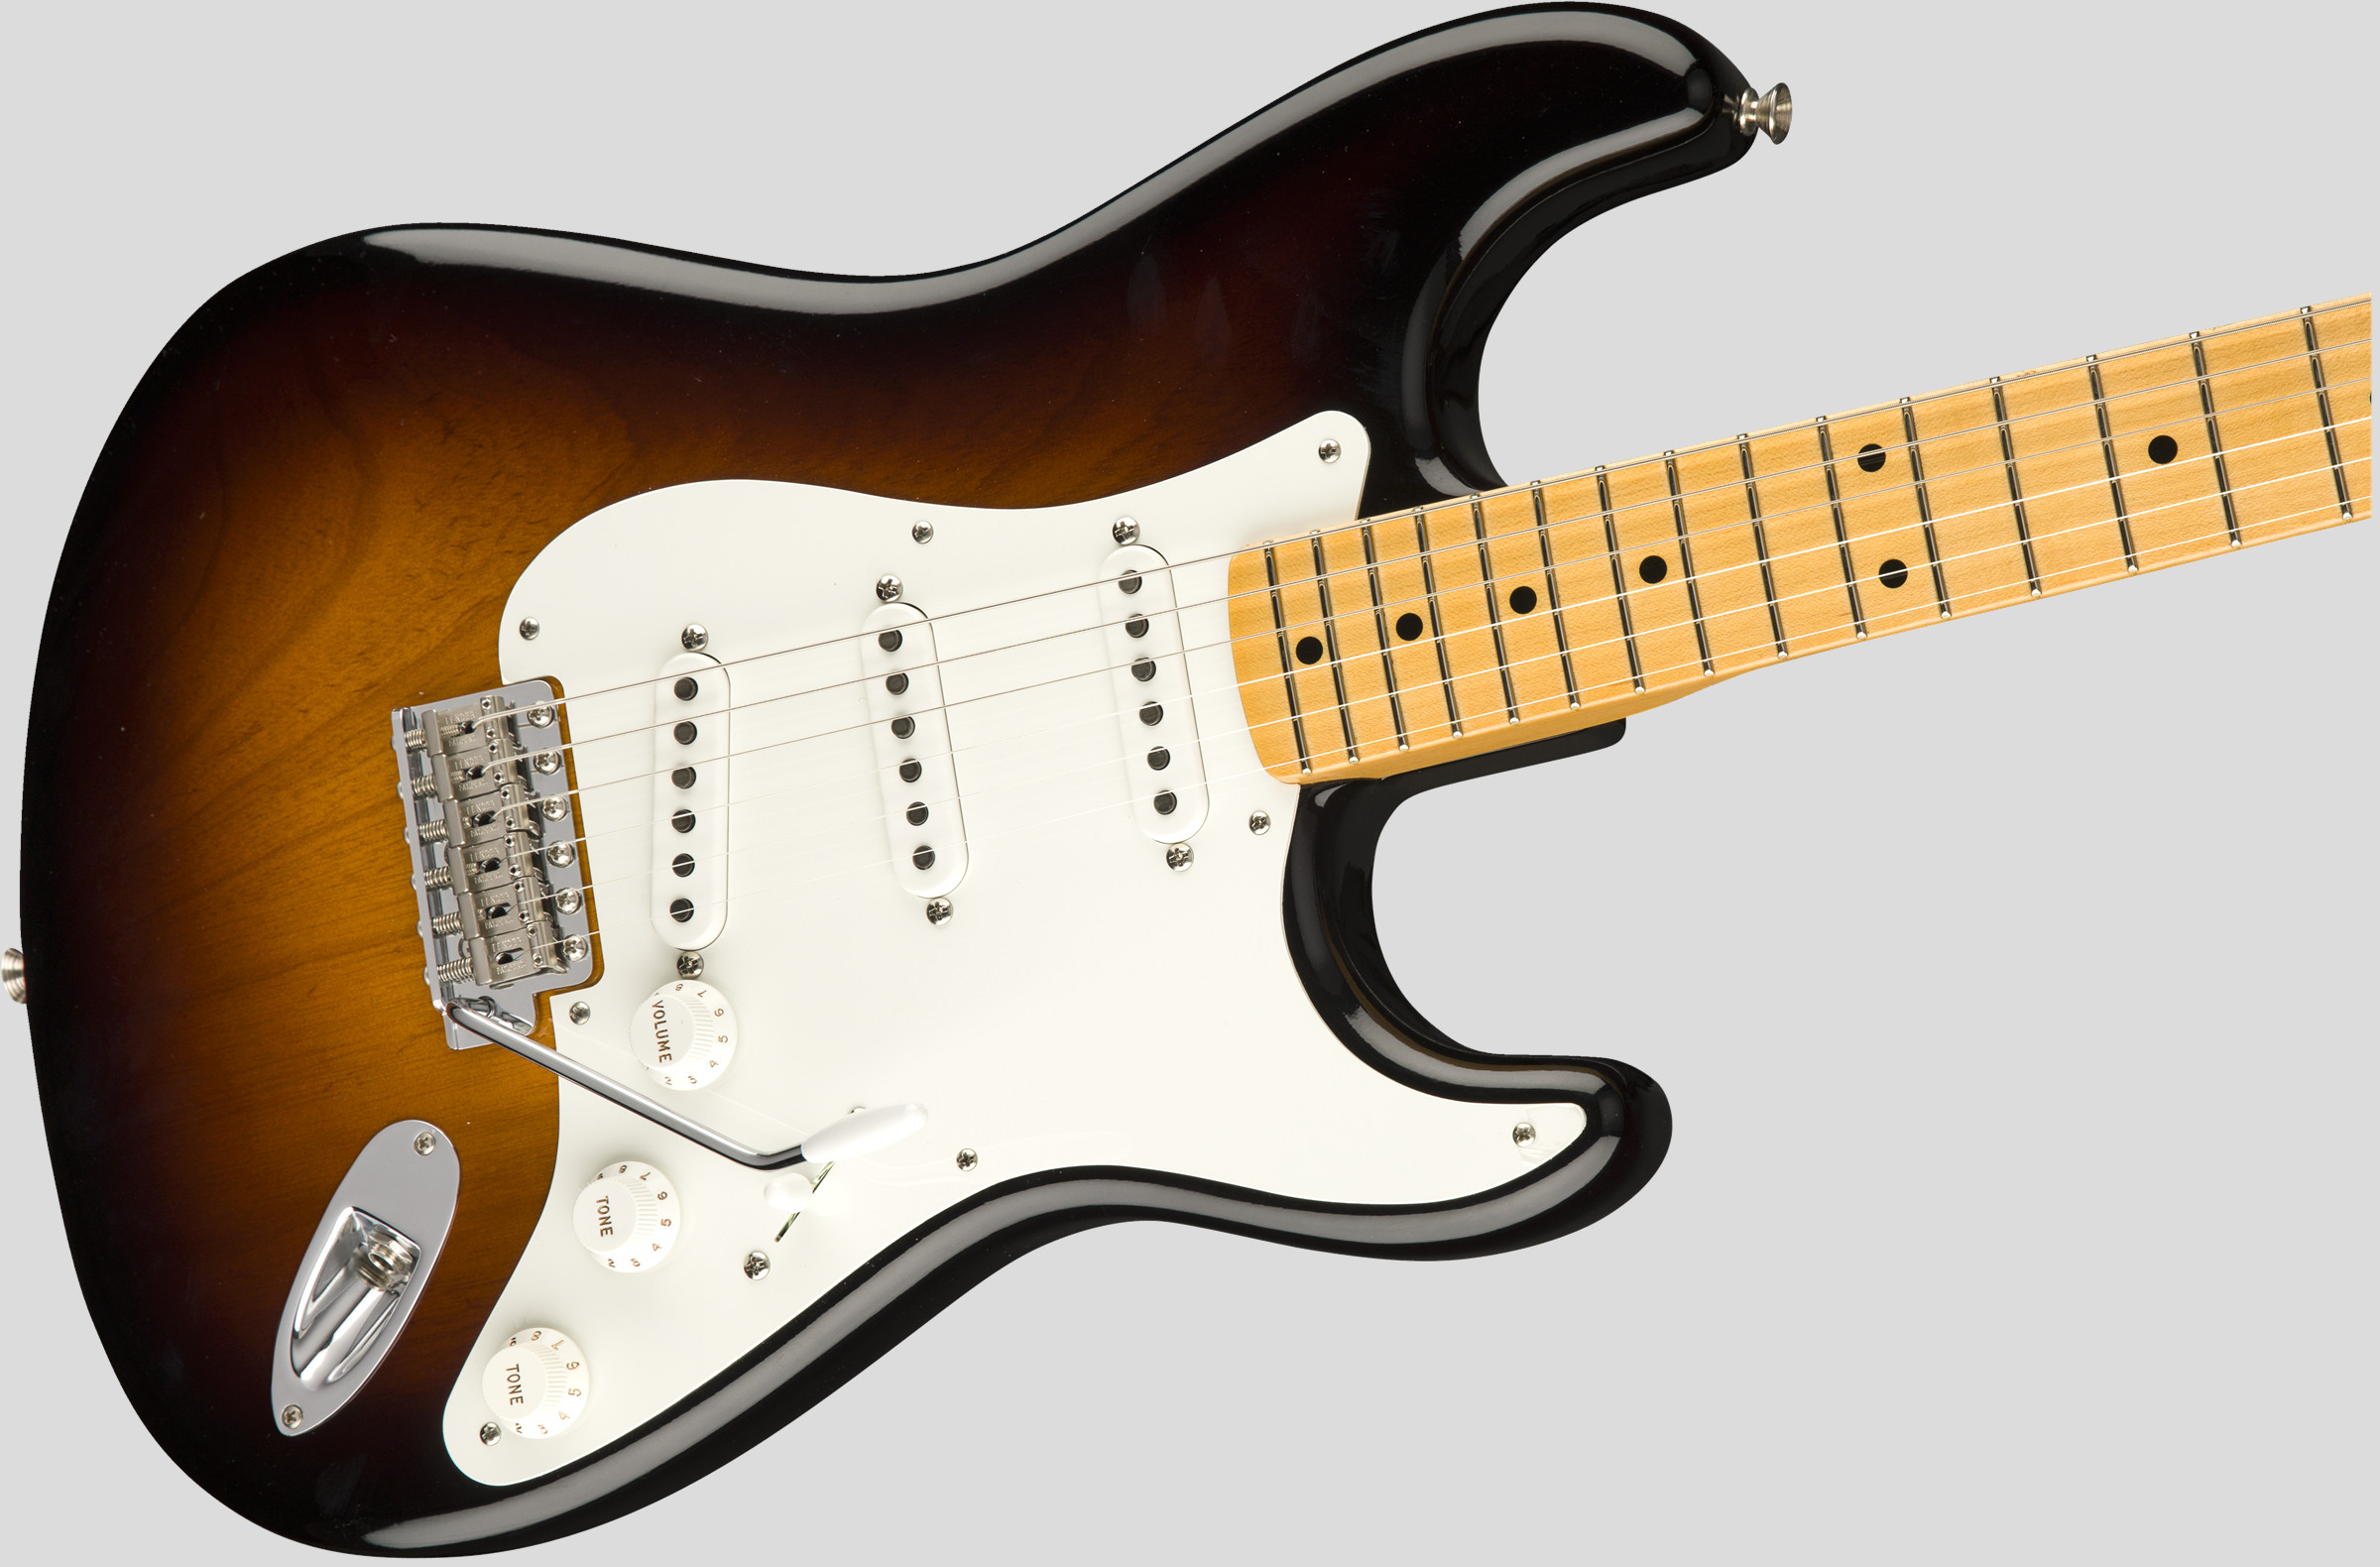 Fender Custom Shop Vintage Custom 55 Stratocaster Wide-Fade 2-Color Sunburst NOS 4